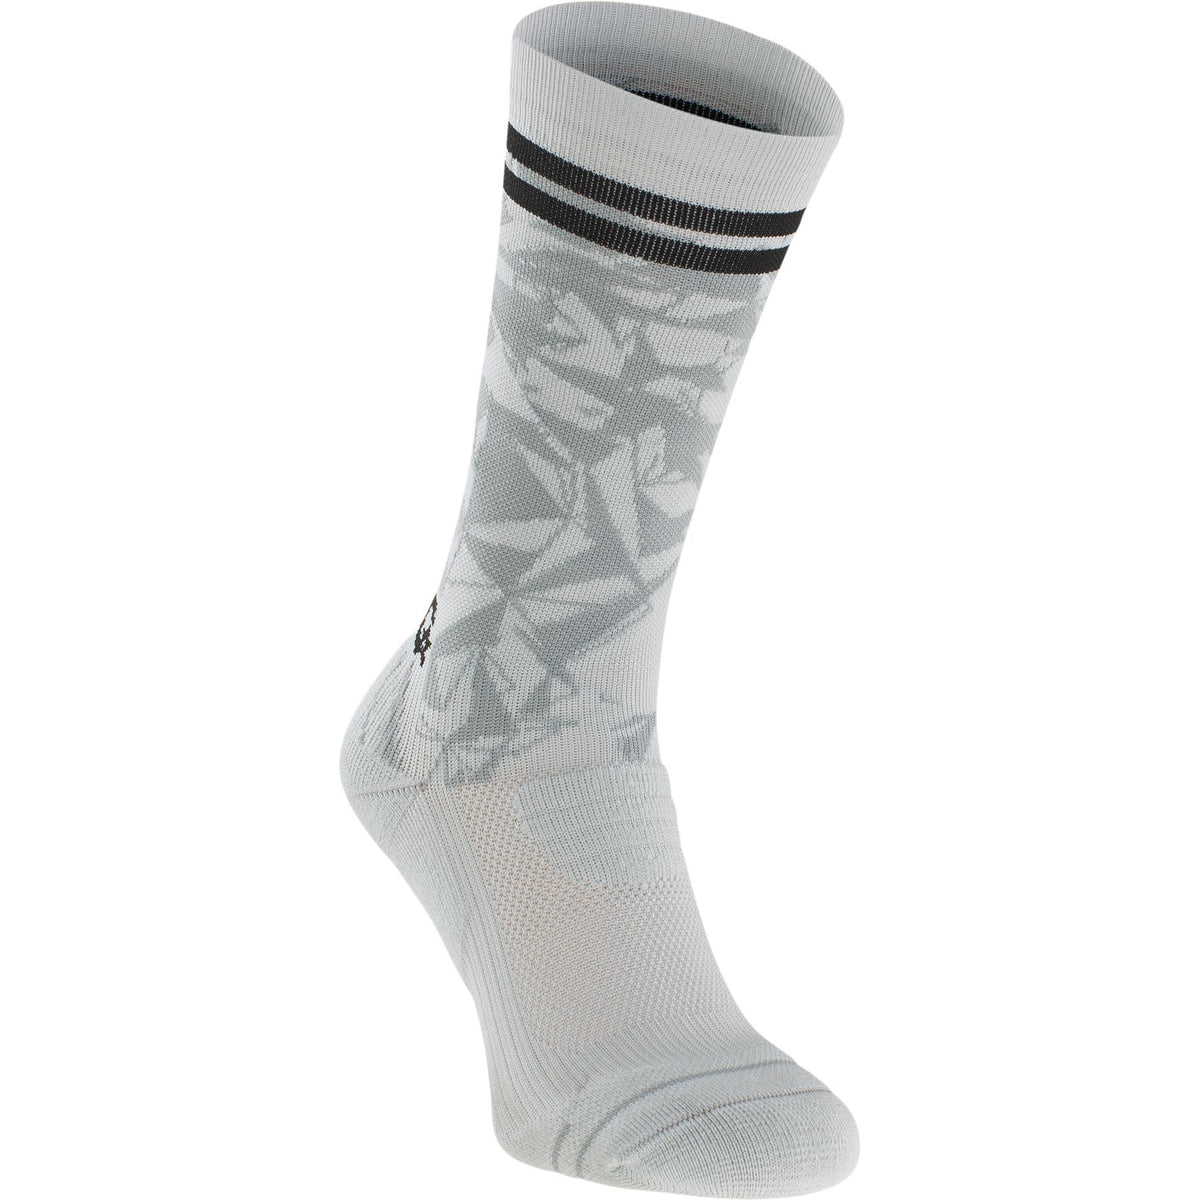 Evoc Socks Medium Stone L/XL (10 - 13)